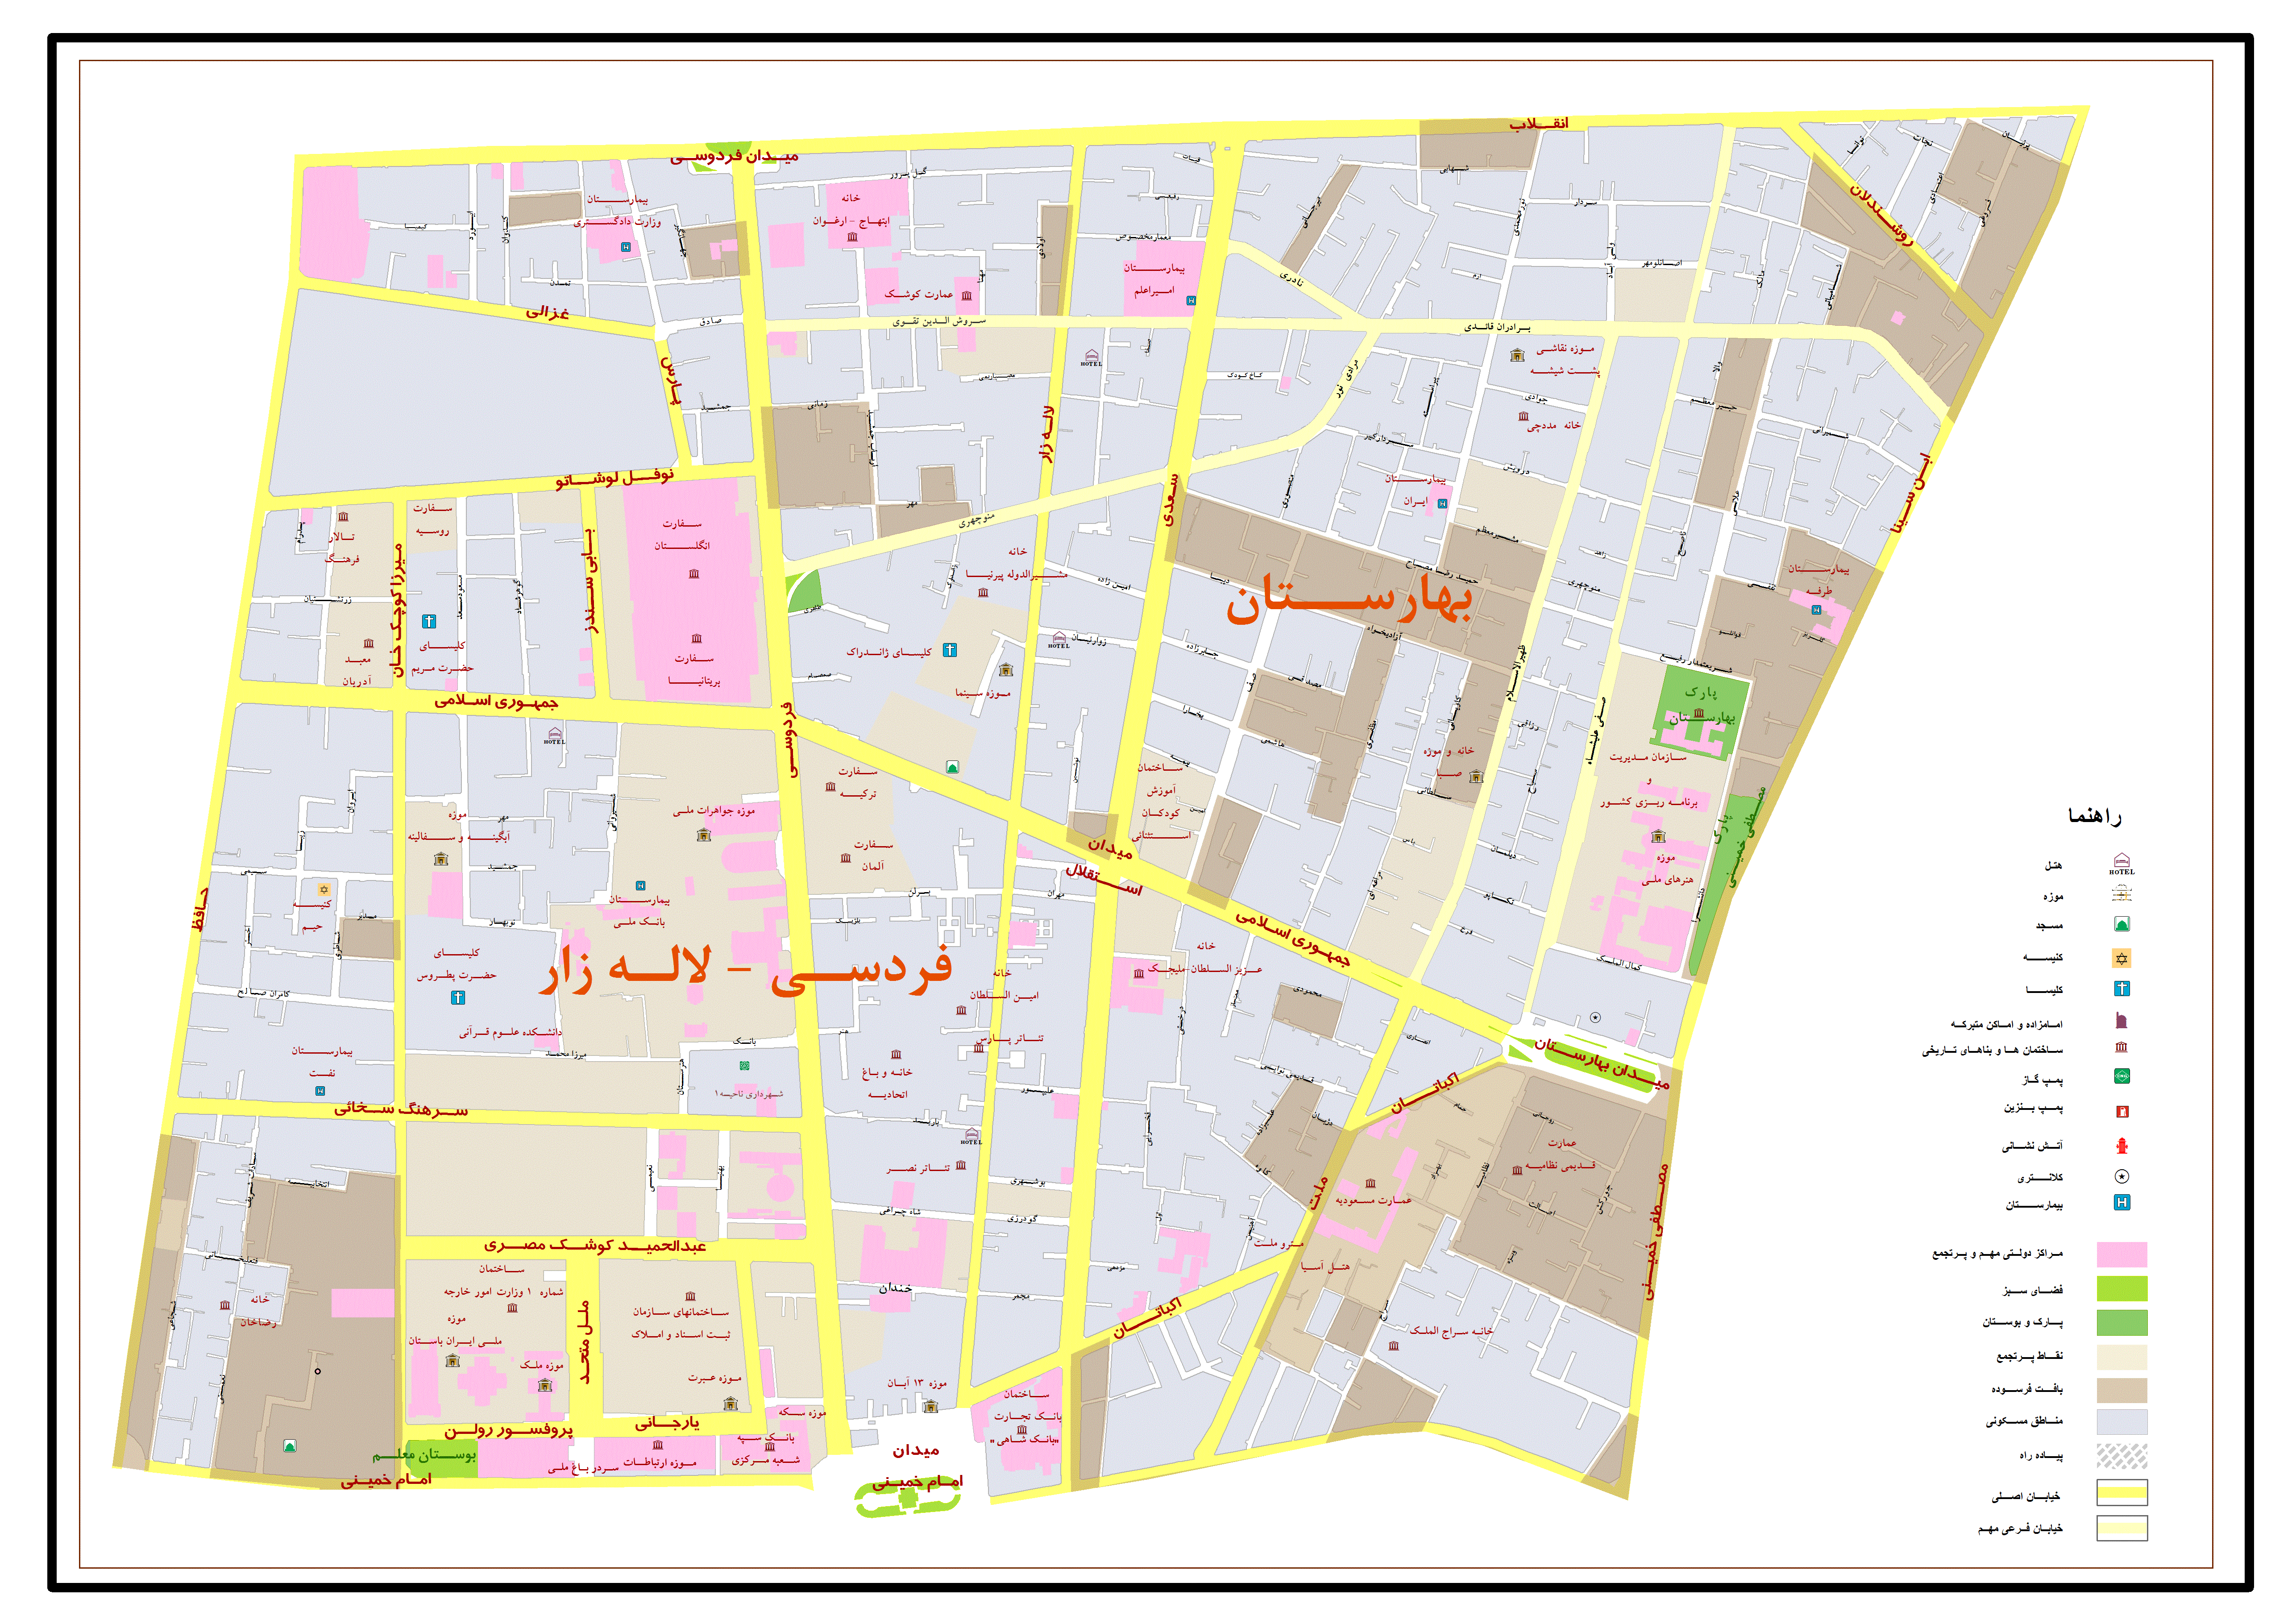 نقشه بازار بزرگ تهران با کیفیت عالی ، جدید و کامل